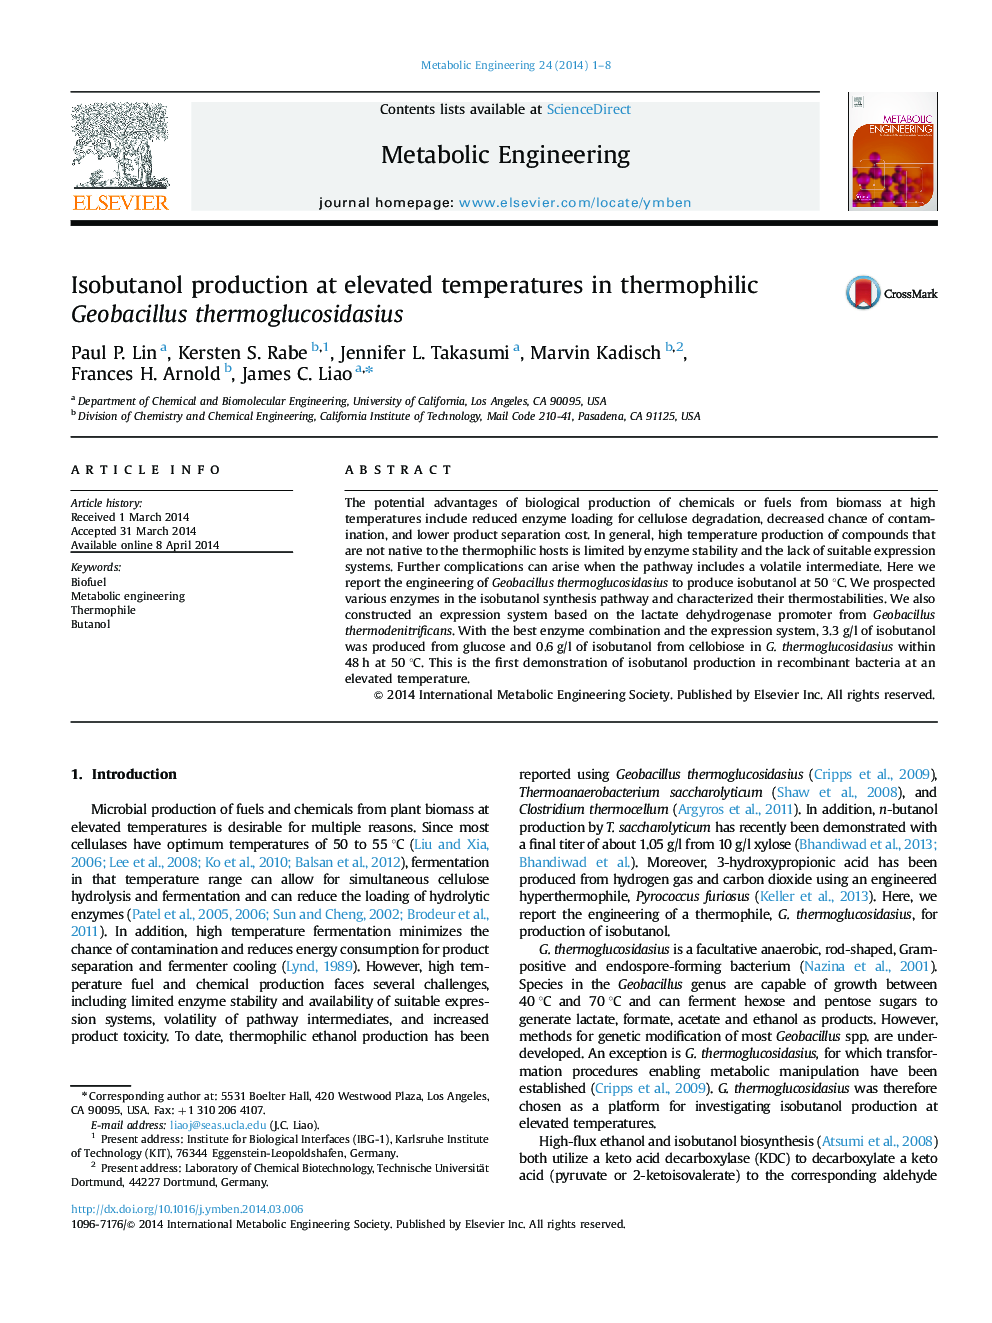 Isobutanol production at elevated temperatures in thermophilic Geobacillus thermoglucosidasius